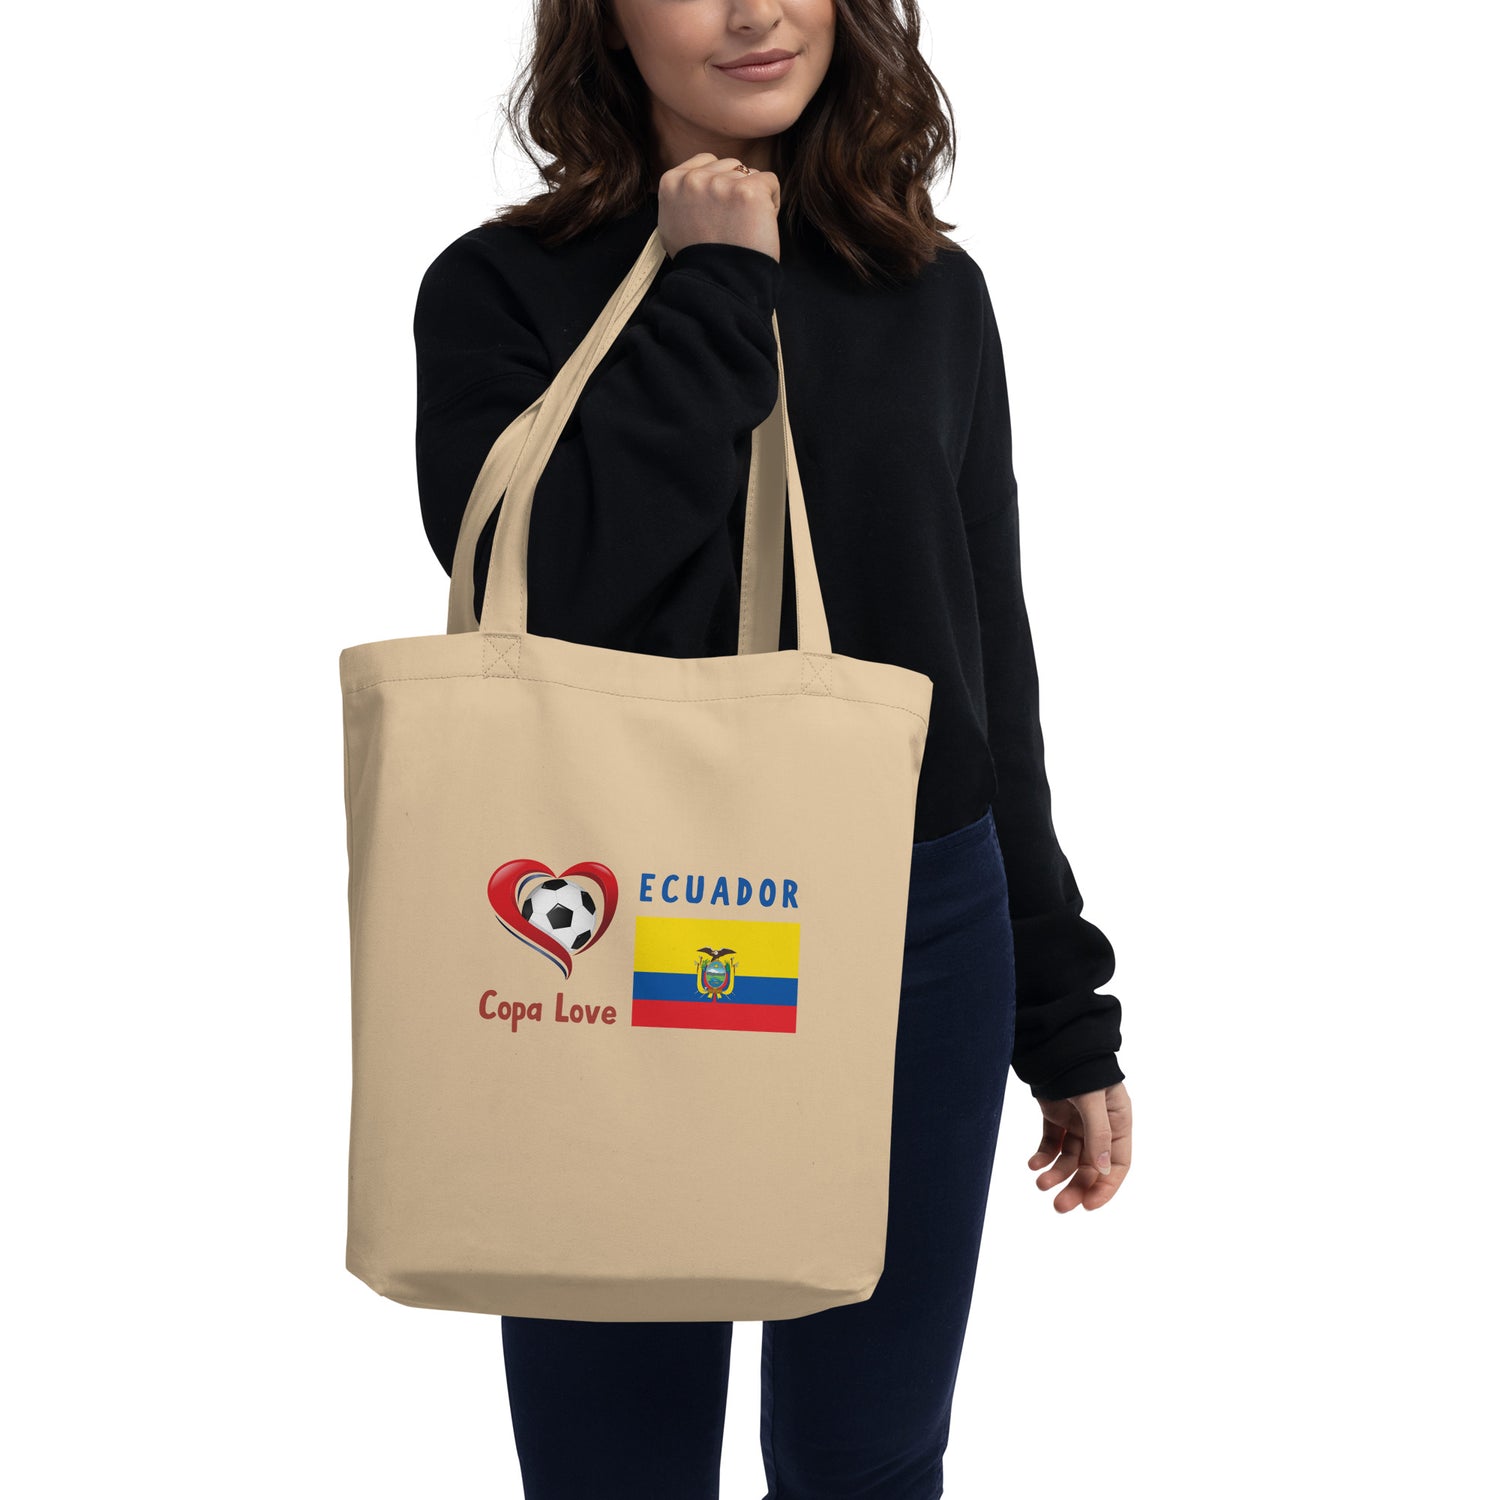 ECUADOR - Copa Love Eco Tote Bag